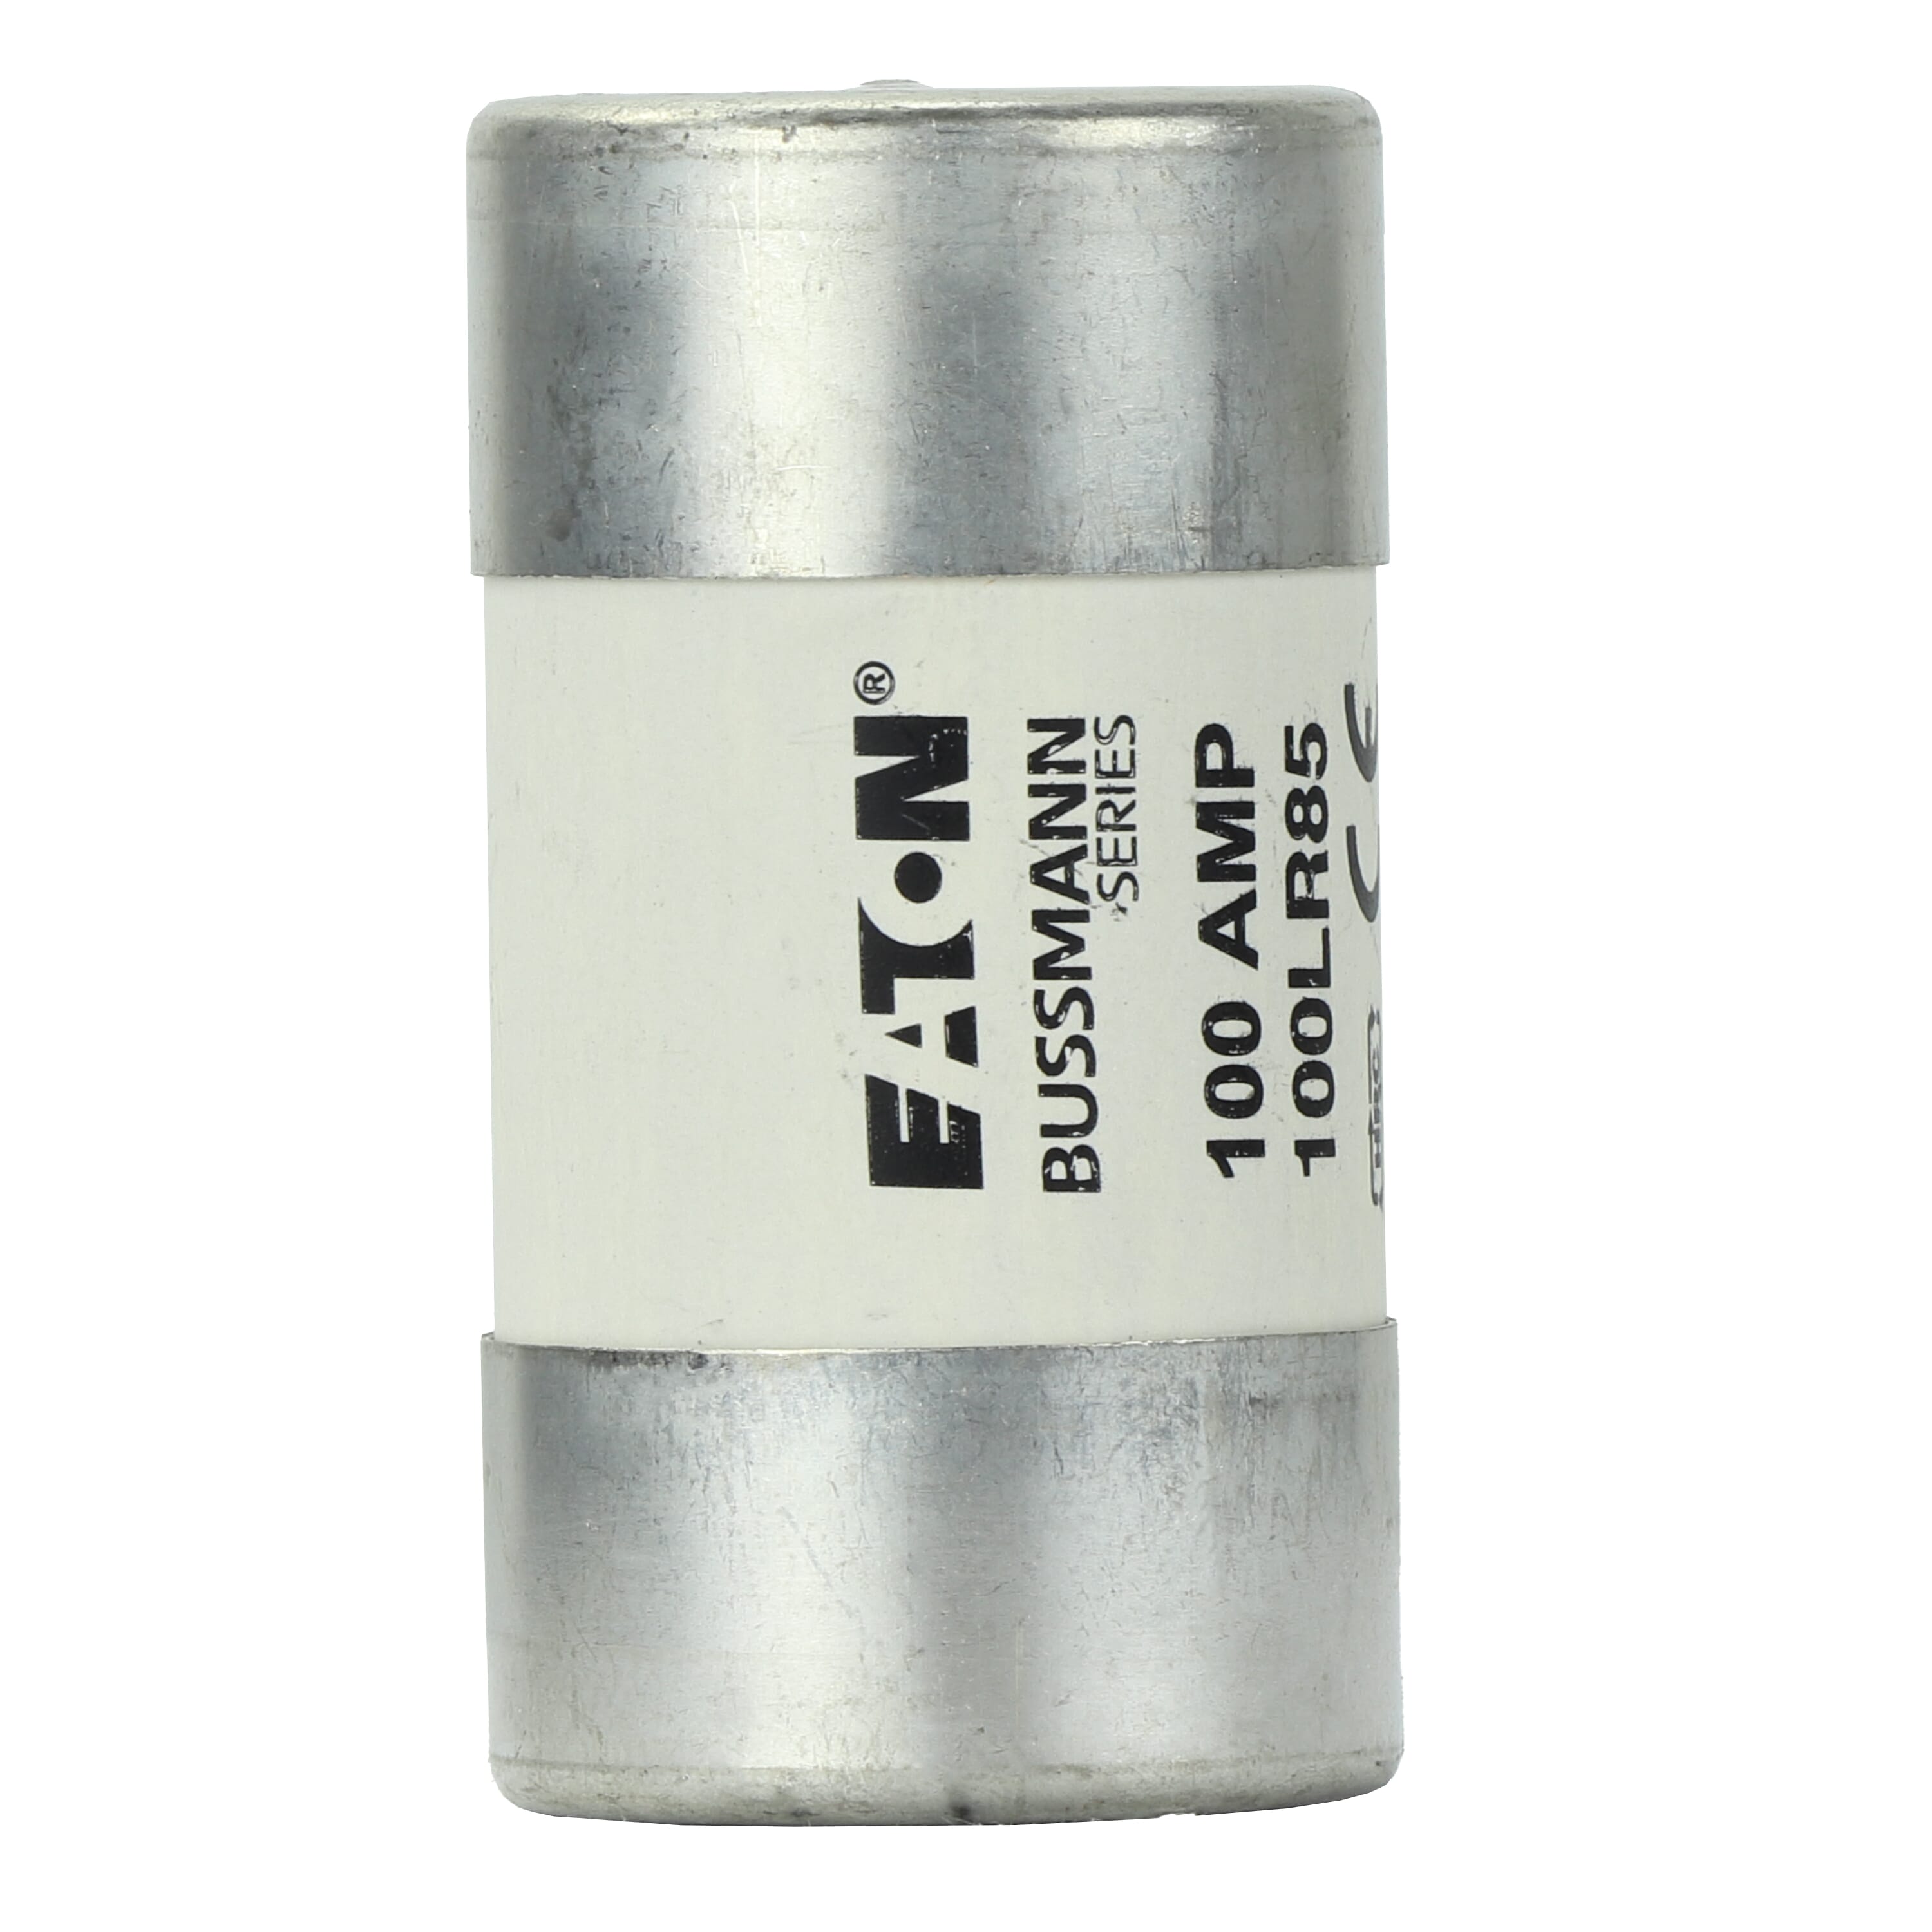 Eaton Bussmann 100KR85 100Amp BS1361 Cartridge Fuse 